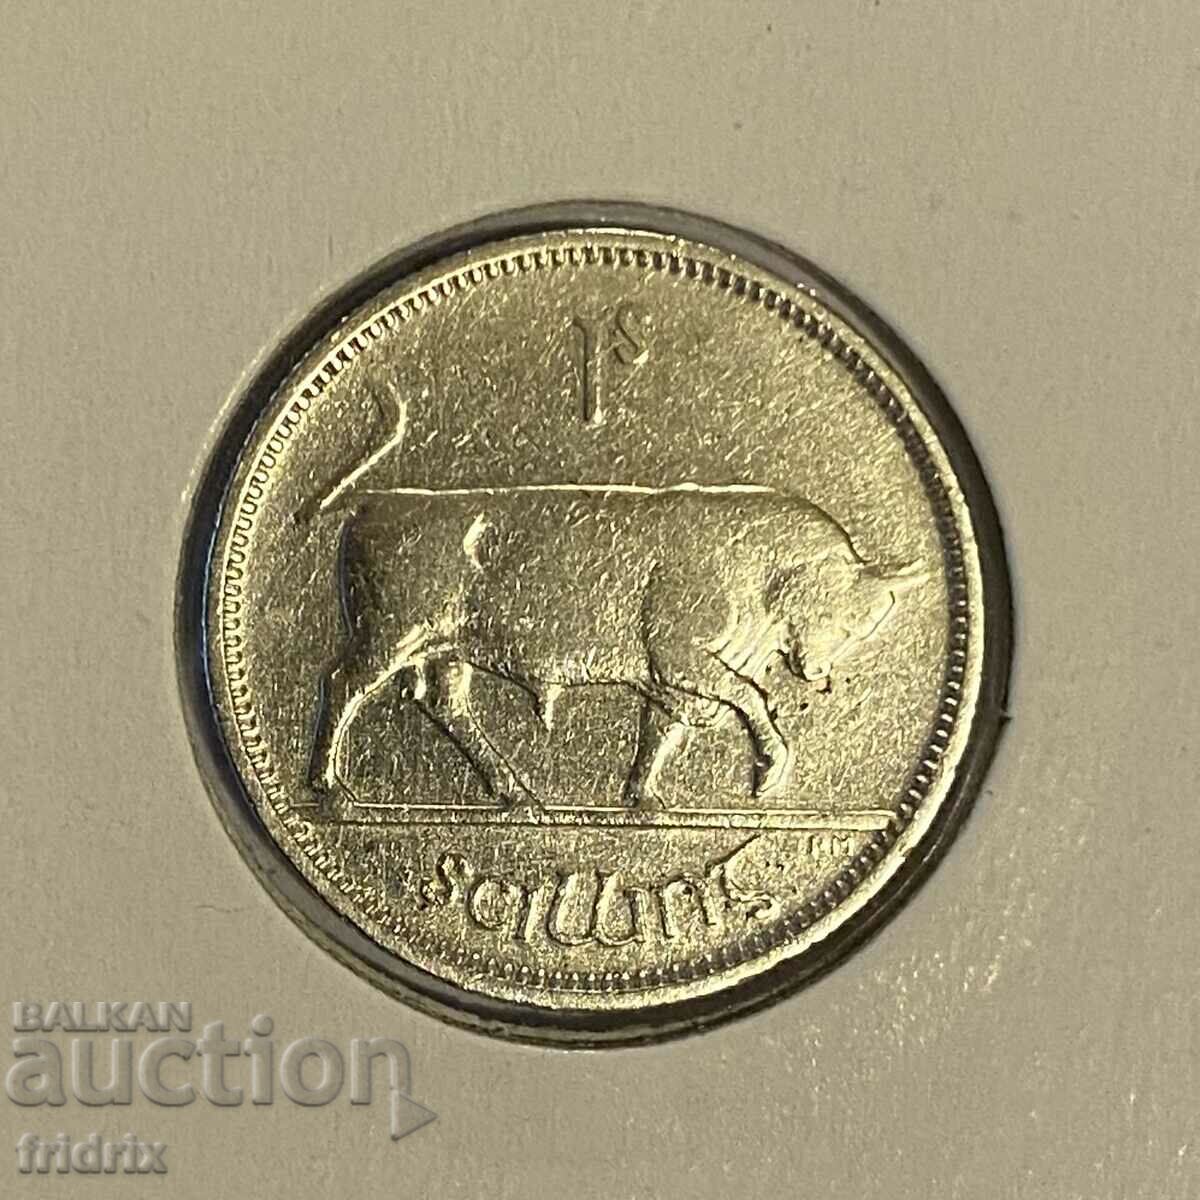 Ирландия Реп. 1 шилинг / Ireland 1 shilling 1940